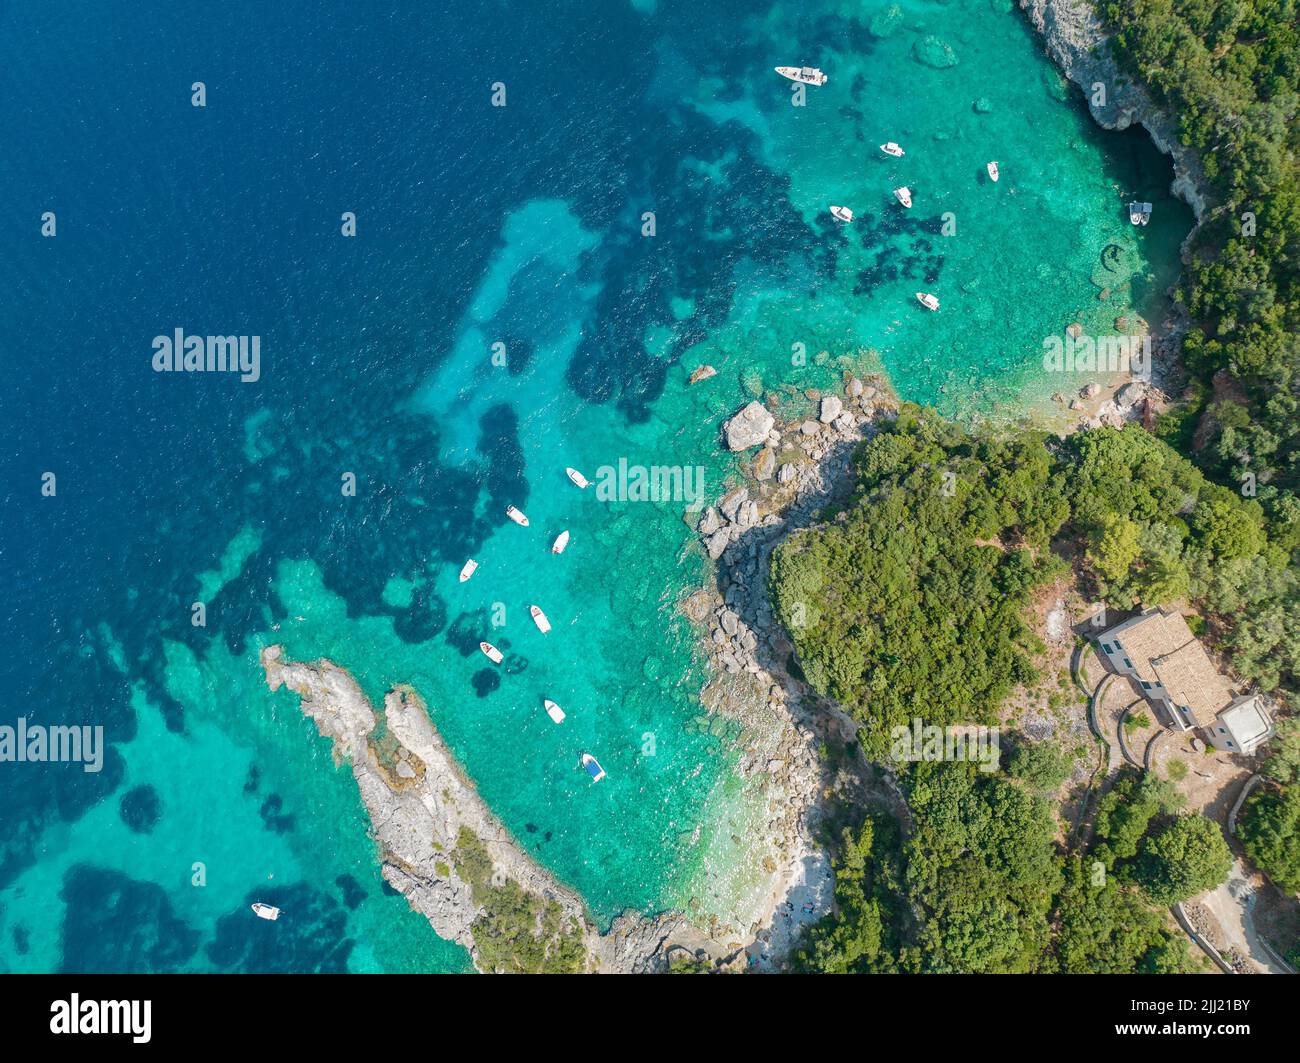 Vista aerea della spiaggia di Klimatia, vicino alla spiaggia di Limni sull'isola di Corfù. Litorale. Acqua trasparente e cristallina, barche ormeggiate. Grecia Foto Stock